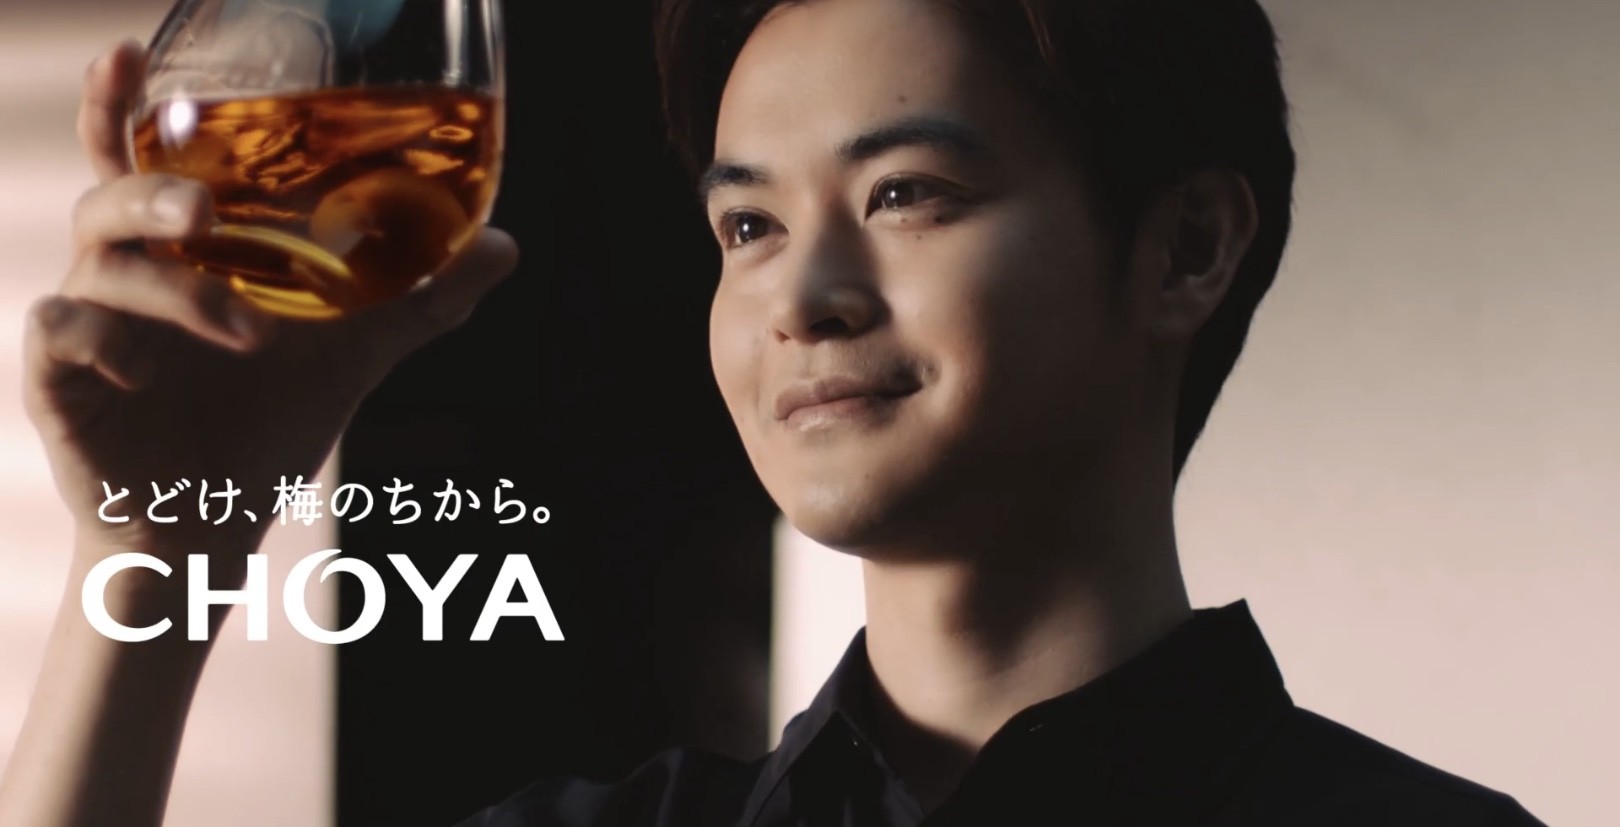 瀬戸康史出演のチョーヤ新cm Choya Quality篇 が放映中 美しいスローモーションに注目してチェック